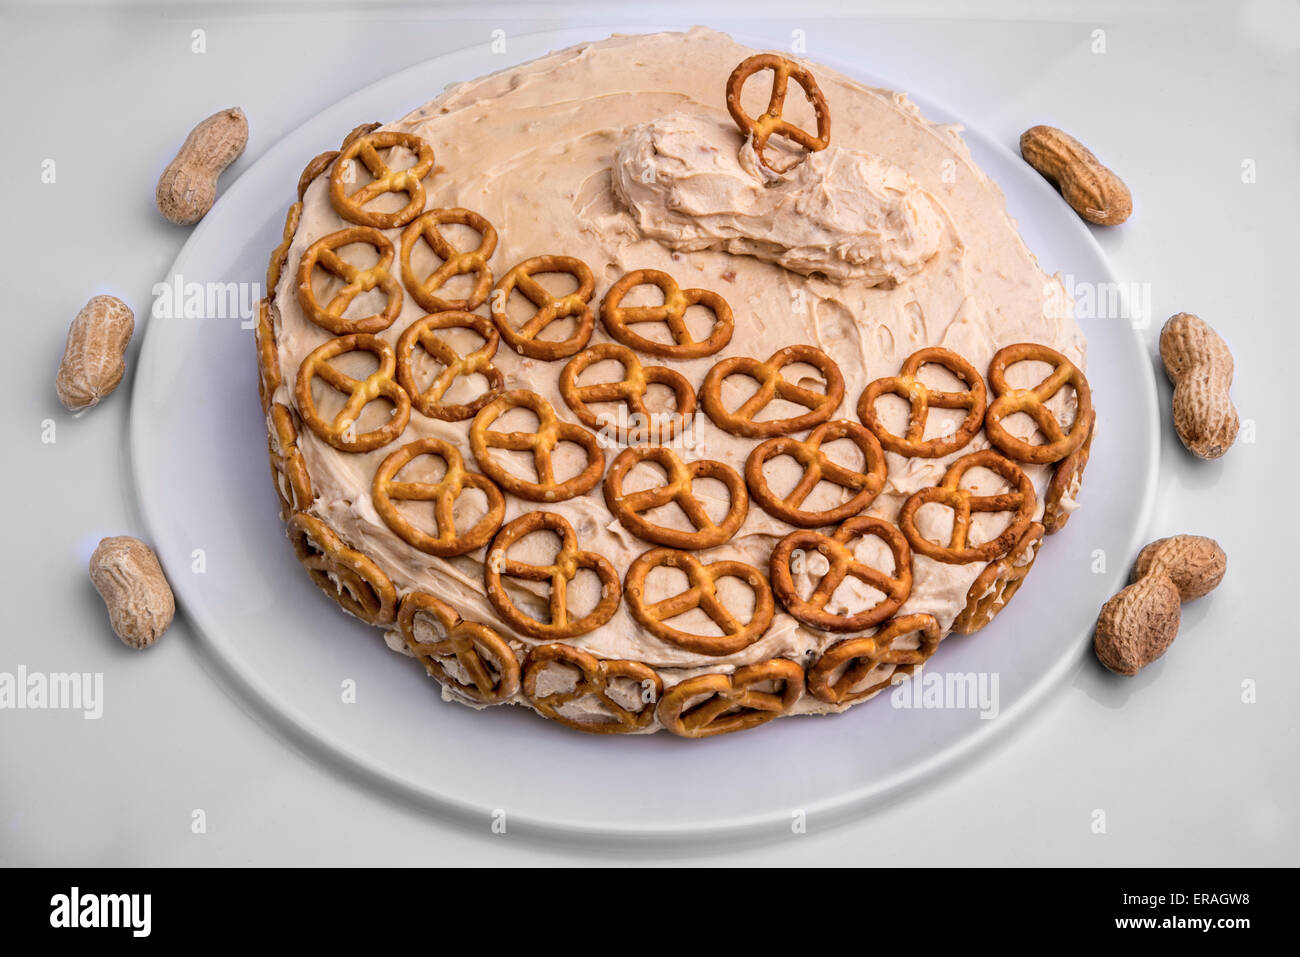 Die süßen und salzigen Schokoladenkuchen mit Peanut Butter, Puderzucker und dekoriert mit Brezeln für zusätzliche Crunch. Stockfoto